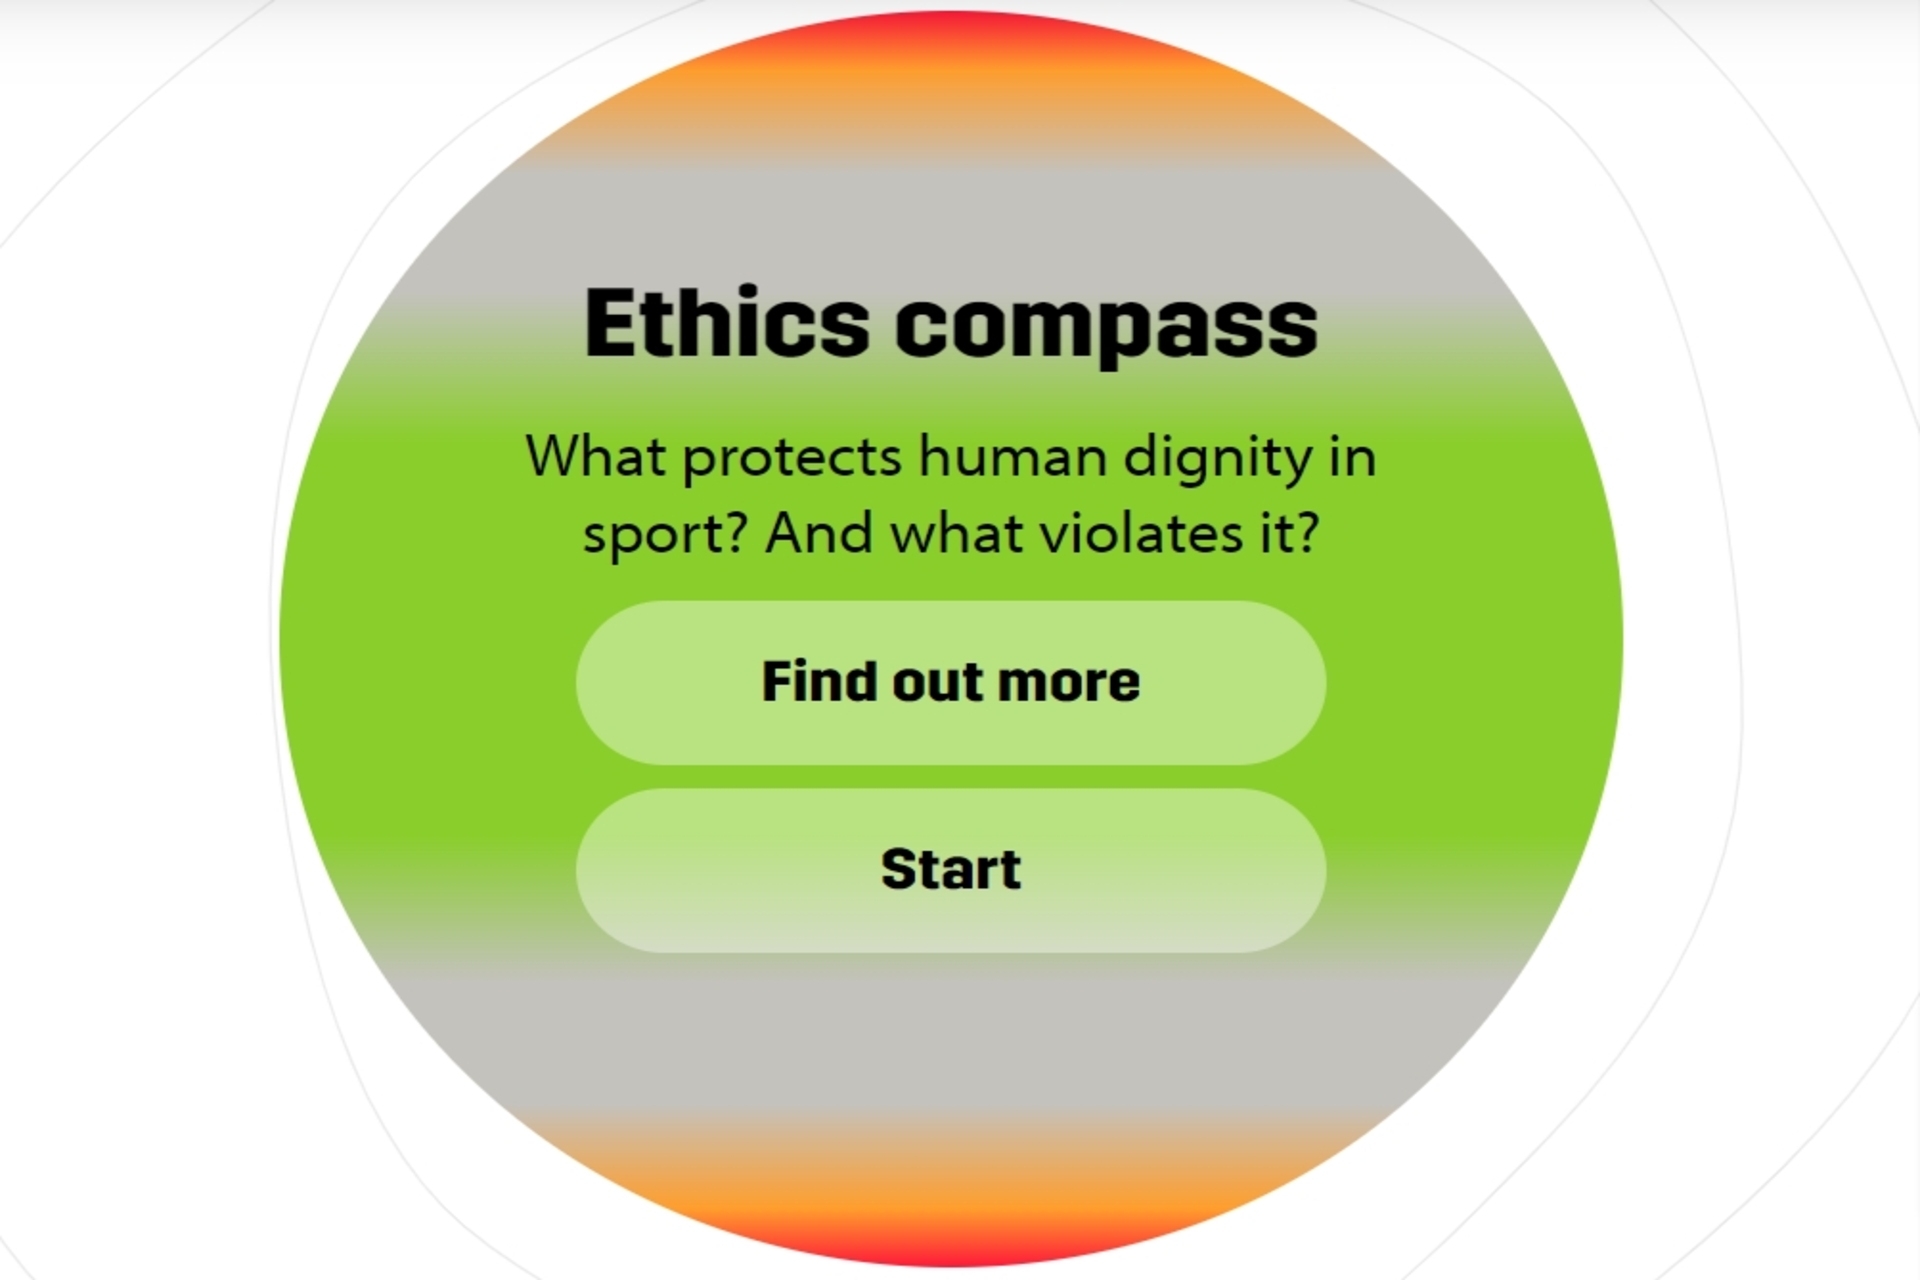 Digitalni etički kompas kamen je temeljac projekta